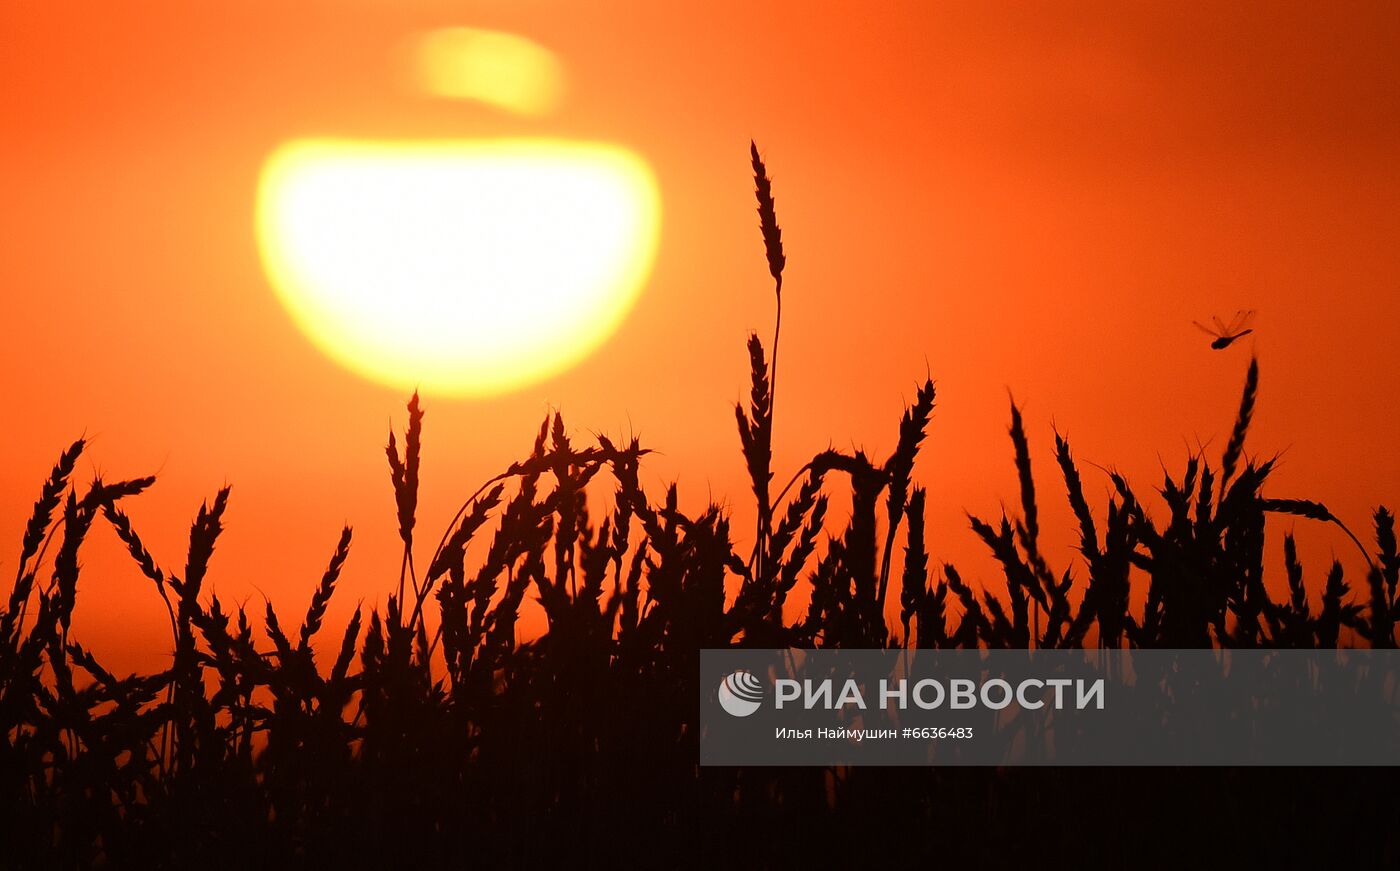 Сбор урожая зерна в Красноярском крае